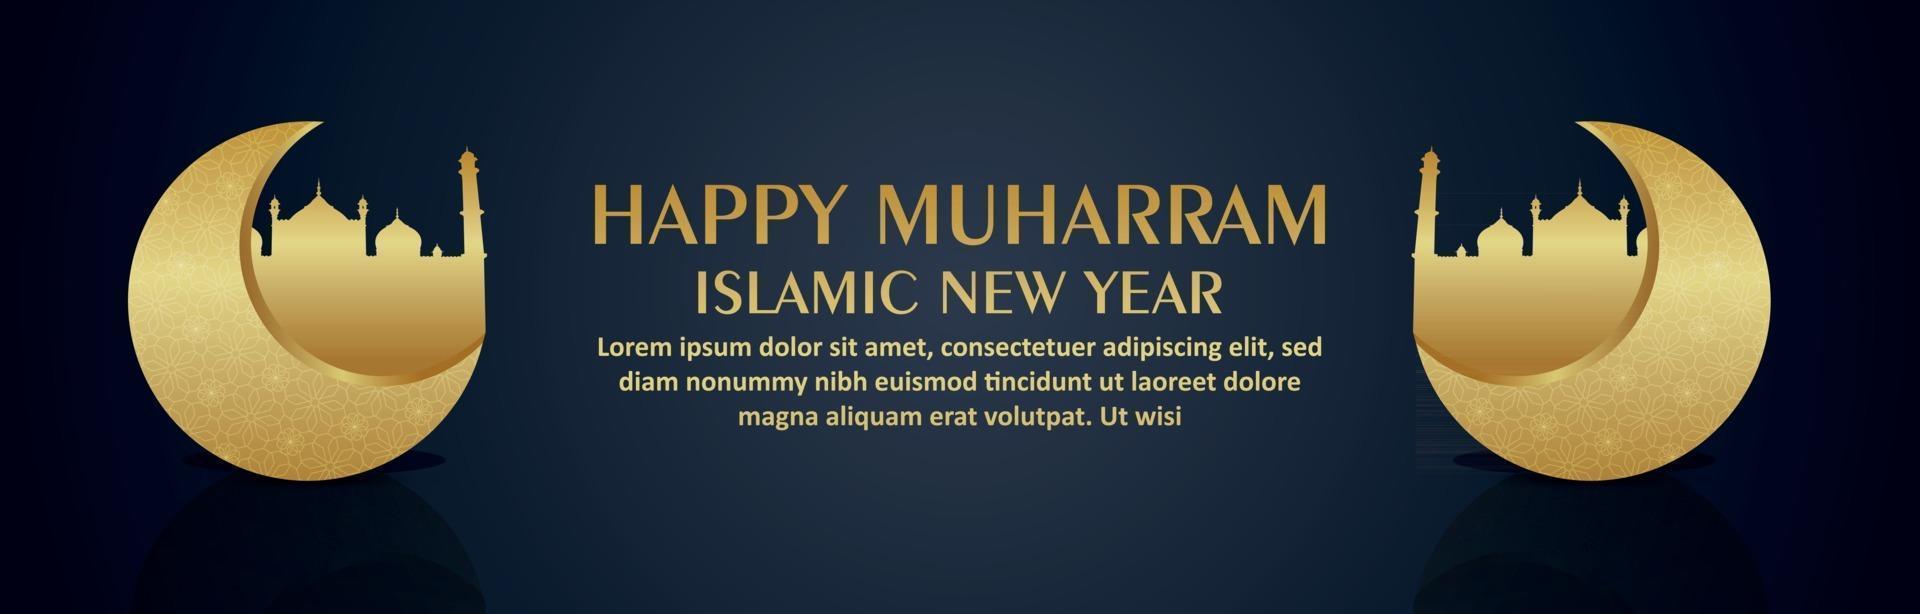 Happy Muharram Feier Banner oder Header mit goldenem Mond und Moschee vektor